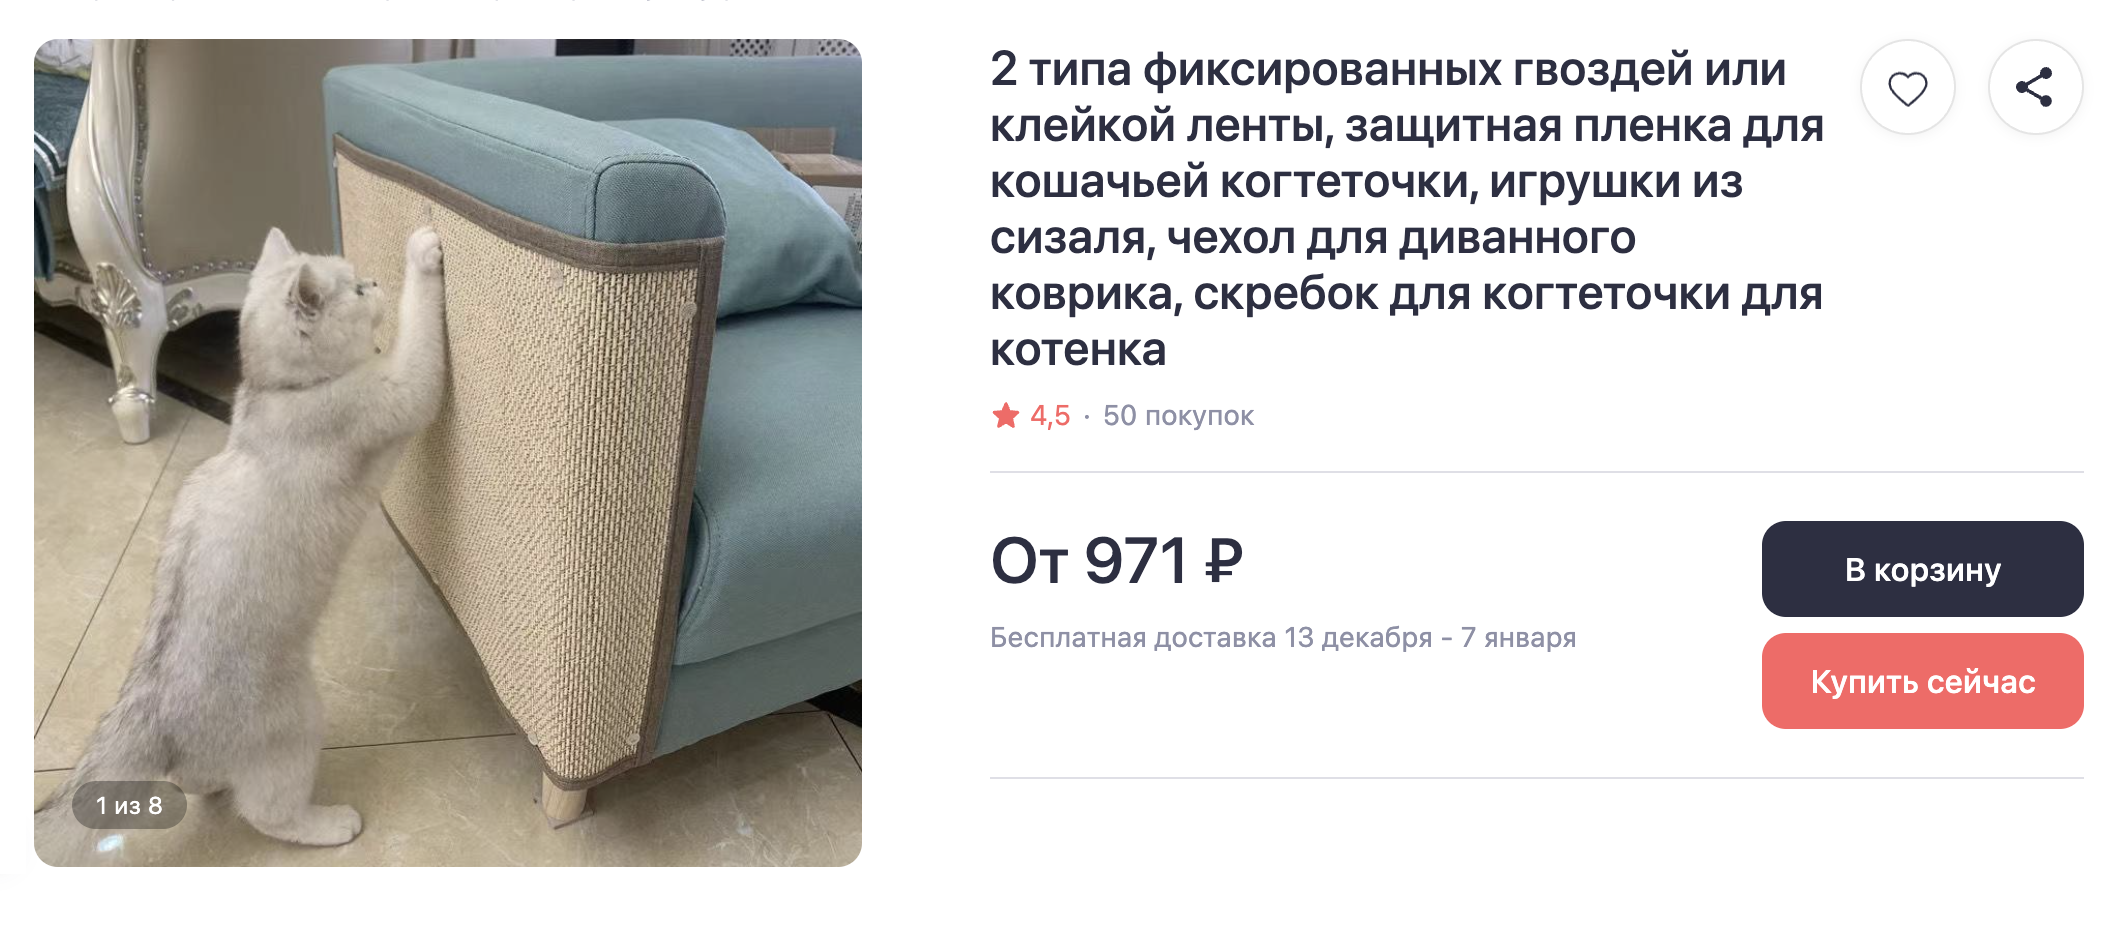 Коврик для спинки дивана защитит мебель и позволит кошке точить когти в привычном месте. Источник: joom.ru